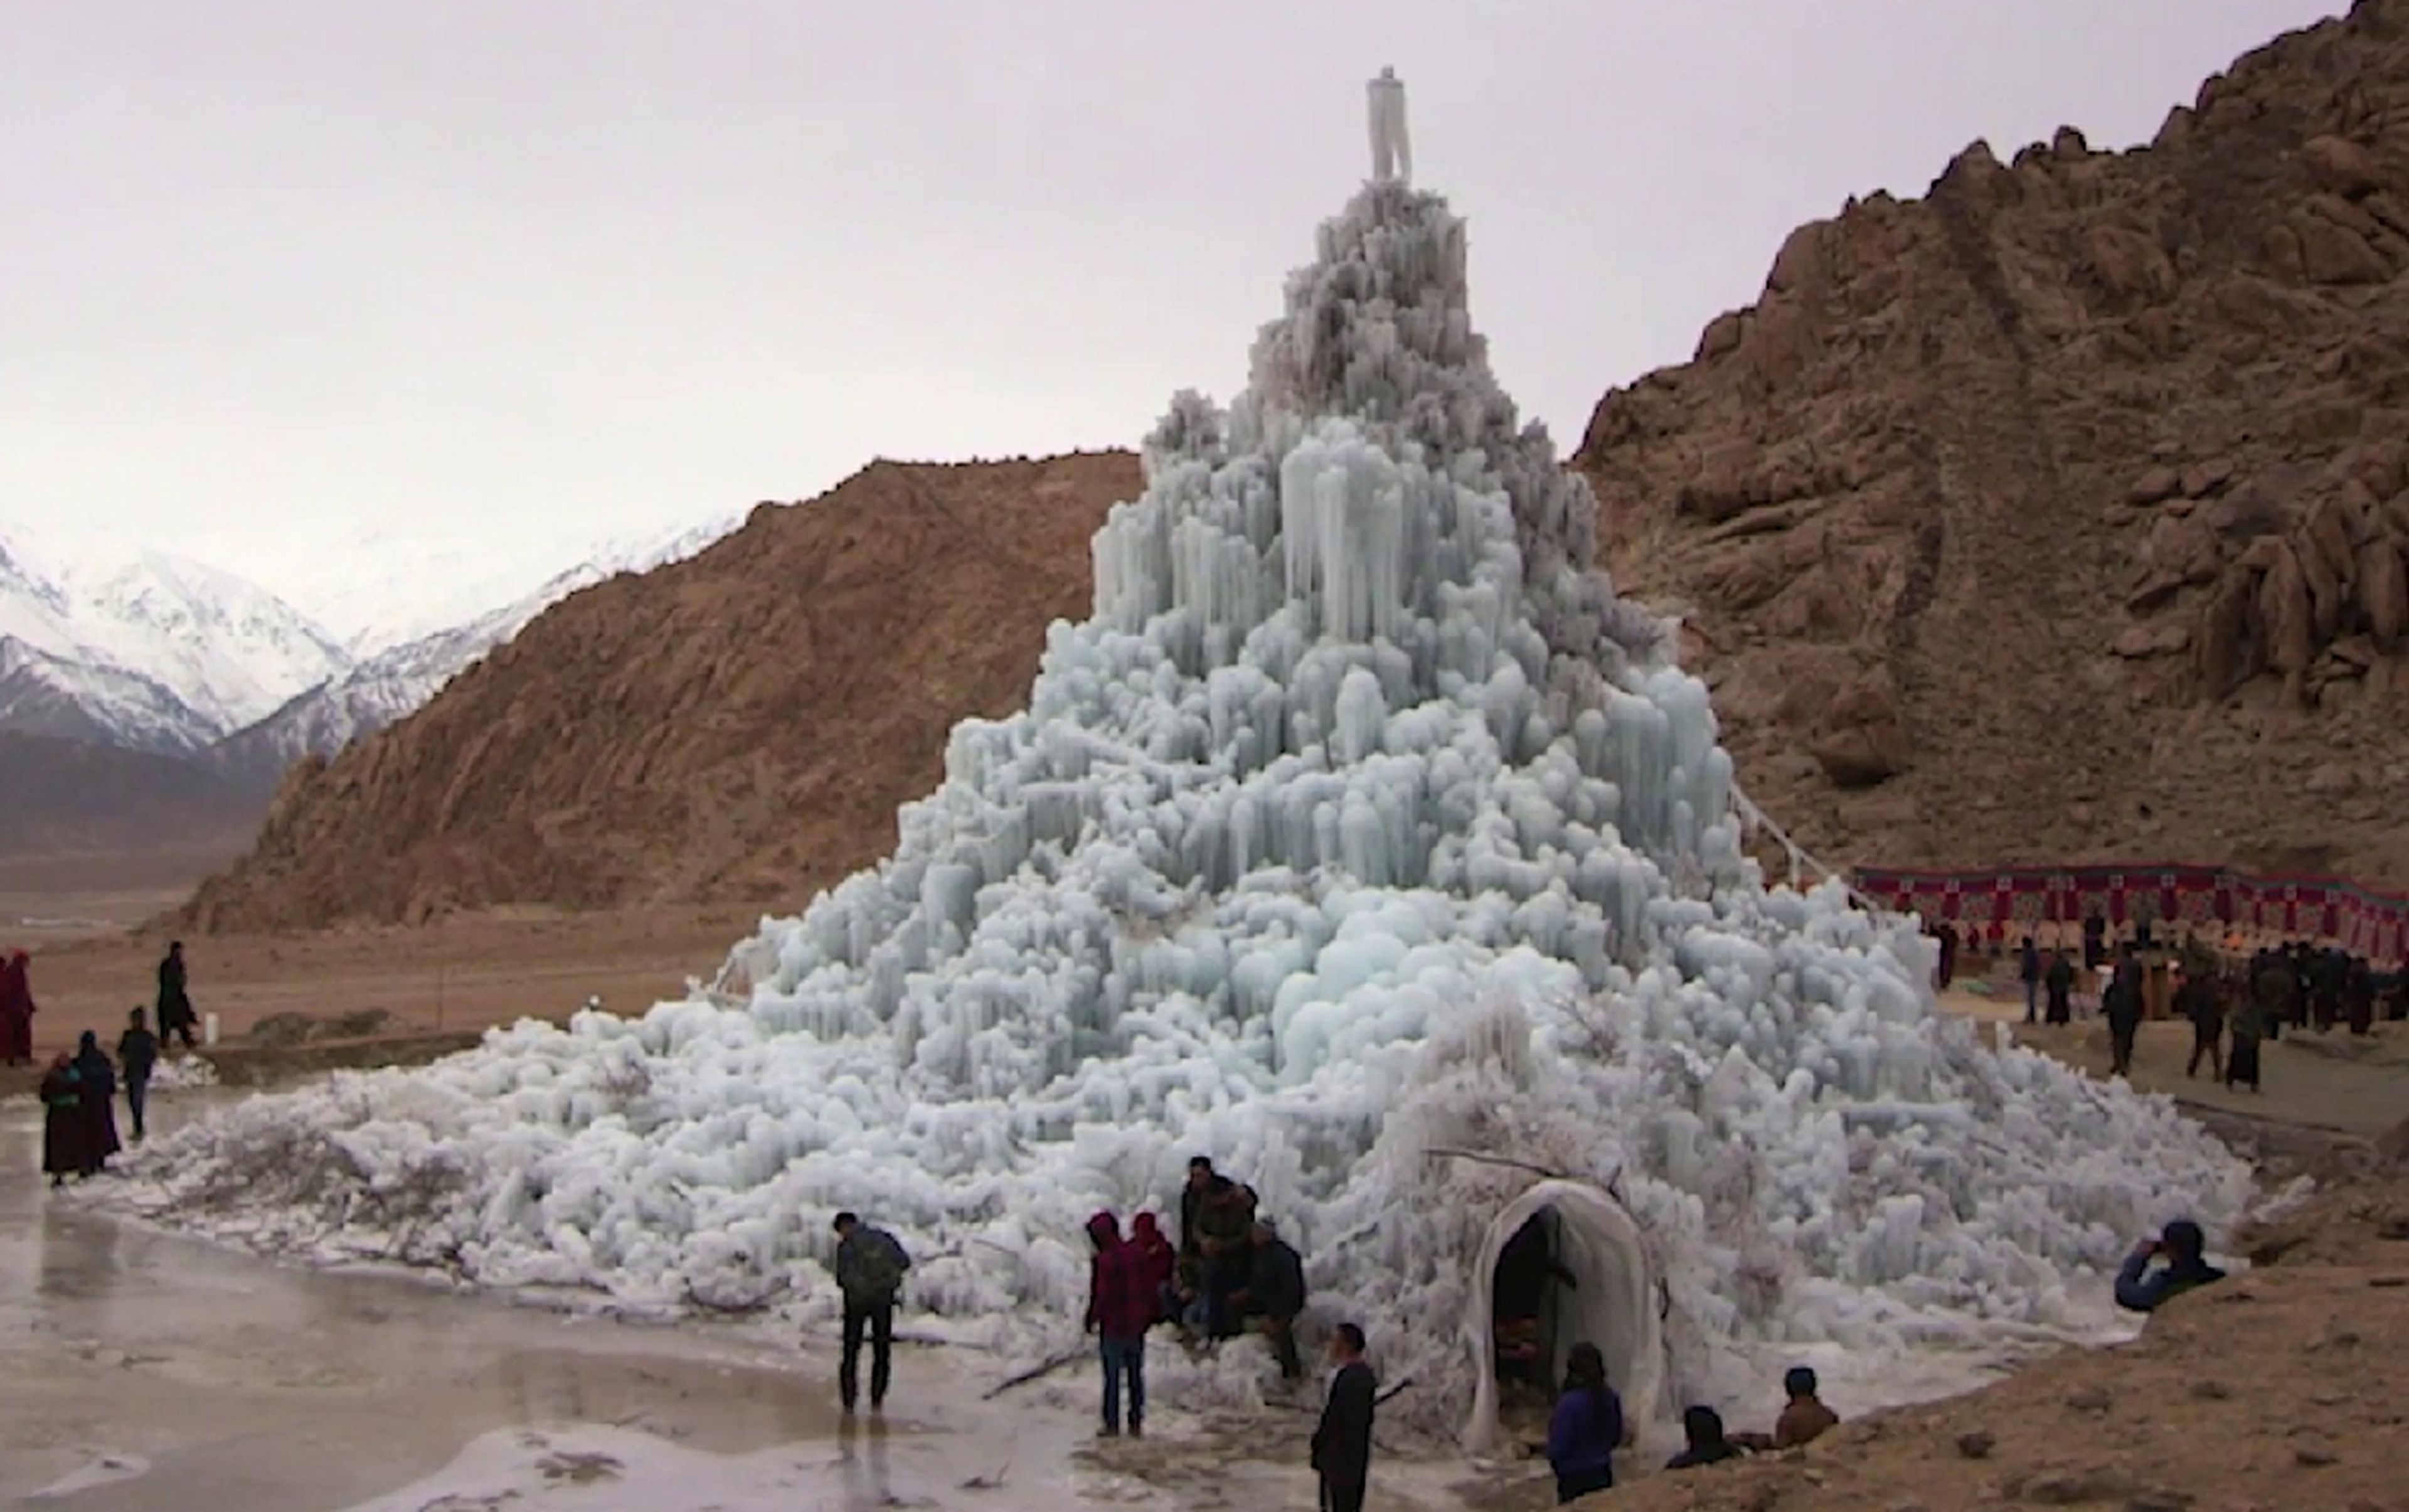 Crean glaciares artificiales en el desierto para convertirlo en un oasis